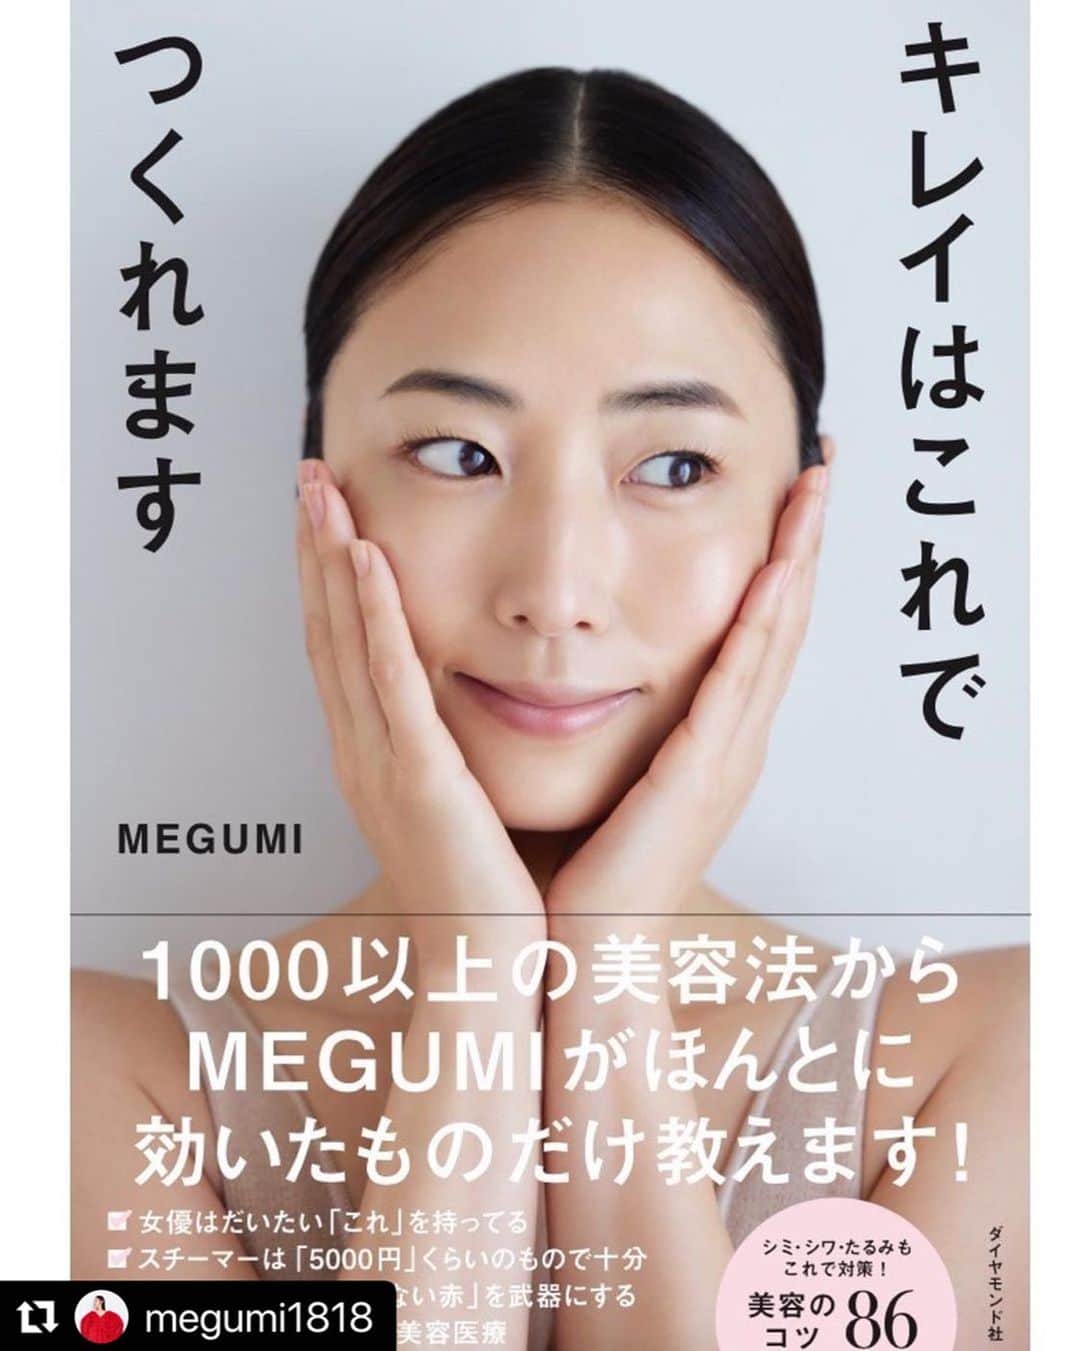 LuLuLun（ルルルン公式）のインスタグラム：「4月19日に発売された @megumi1818 さんの美容本にて 「ルルルンプレシャス GREEN（バランス）」をご紹介いただきました！  おすすめのスキンケア商品や美容法など、 MEGUMIさんの美の秘密がぎゅっと詰まった1冊です💕 みなさんも毎日のスキンケアの参考にしてみてくださいね！  @megumi1818 さん、ご出版おめでとうございます🎉  #Repost ・・・ 皆様にお知らせです💓  私の初の美容本「キレイはこれでつくれます」 4月19日に発売する事になりました！🥰  いきなりですが、 2枚目の写真は、グラビア時代、肌を痛めつけていたのに 何のケアもしてなかった為、ほうれい線が深く刻まれ、 それを隠すために、鬼のようにアイシャドウを 塗っていた顔面、負のスパイラル時代の、28才の私です😅  この頃から美容を本気で始め 約10年かけて法令線が消えました😭 そう、美容はやれば必ず変わるんです✨  10年で約1000種類試した美容法の中で、確実に効果が感じられたコスメやアイテム、クリニックなどを、 Howtoと共に全てご紹介しています。  美容をやっていく中で、肌が変化していく事が 自分のメンタルにも 深く繋がっている事を知りました。 そんなお話しも掲載しています。  この本が皆さんにとって、 ポジティブなきっかけになる事を願っています💓  #プロフィールから購入できます #キレイはこれでつくれます #4月19日発売 #美容本」